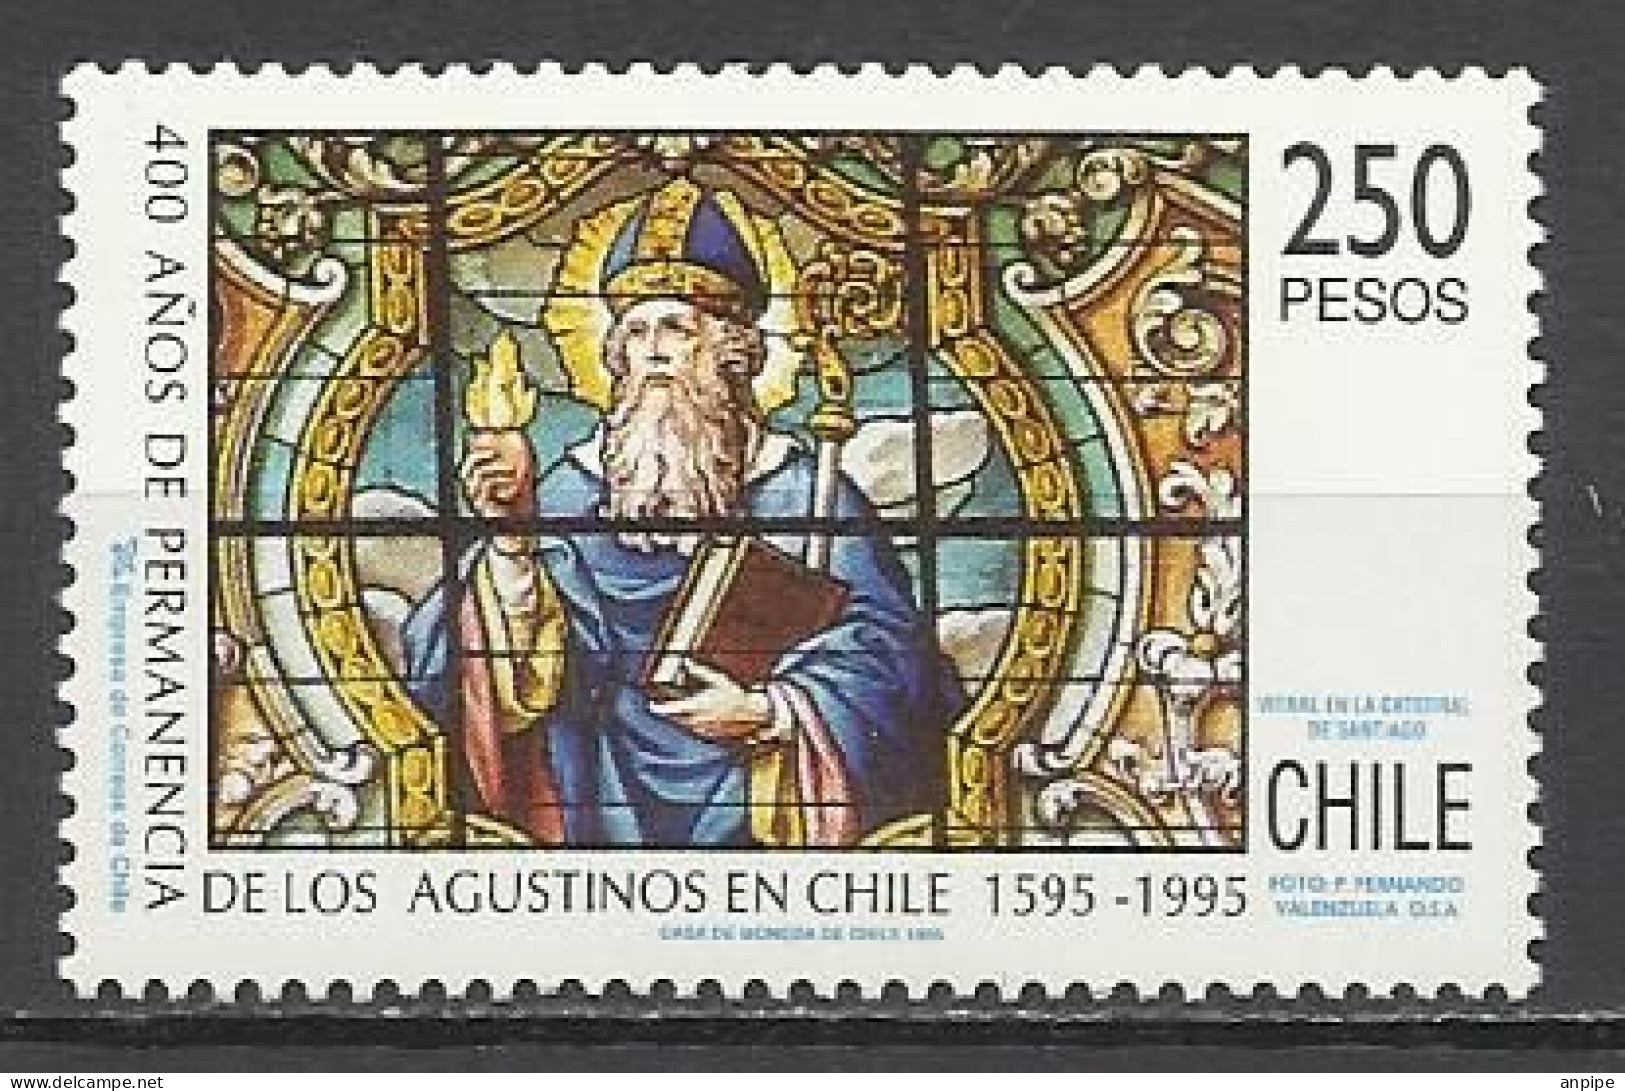 CHILE, 1995 - Chili